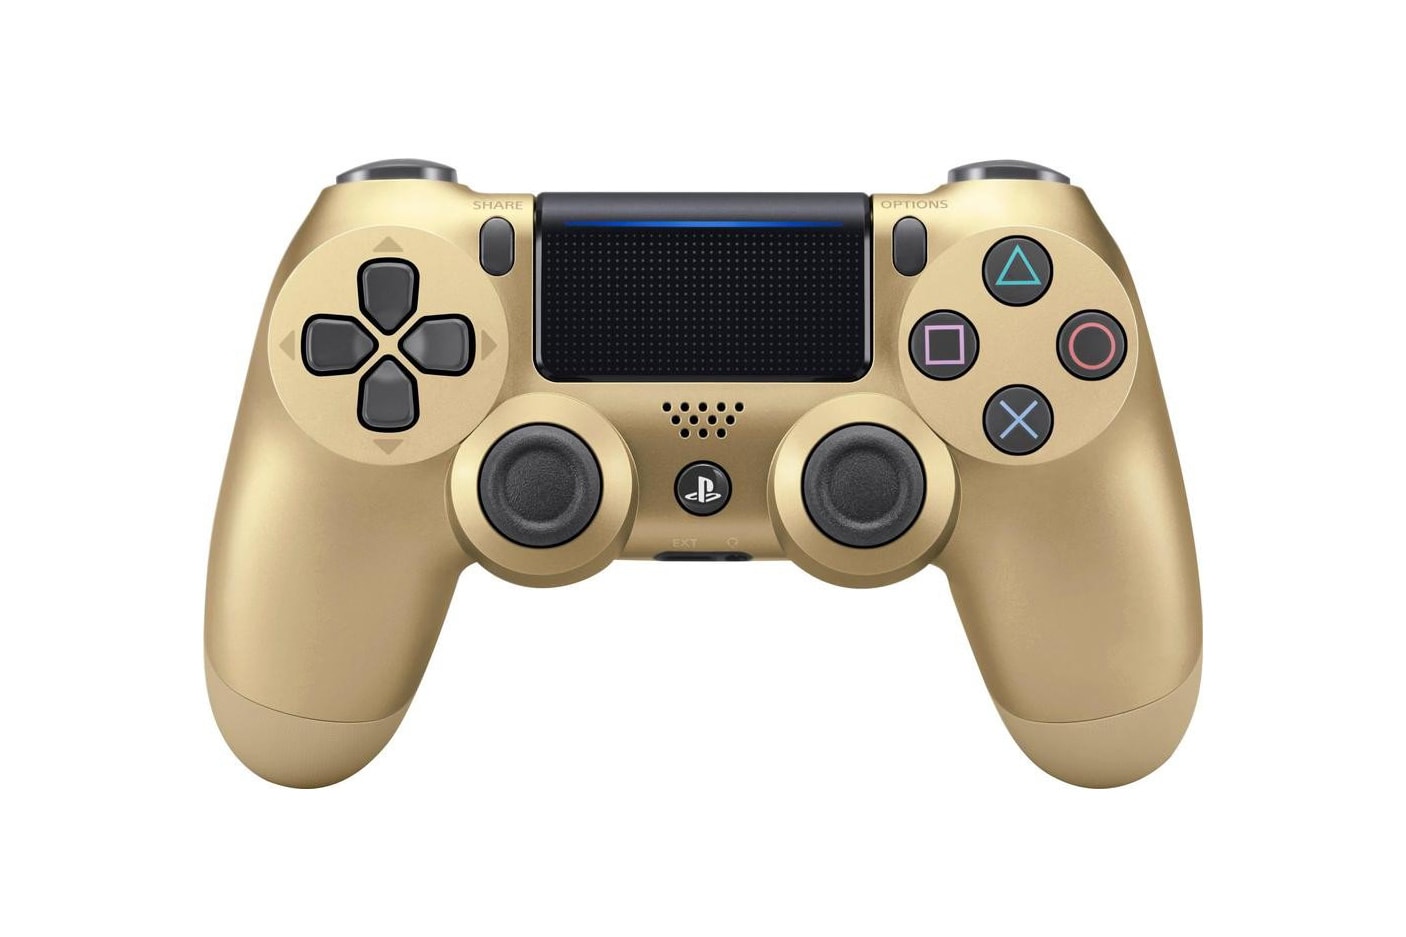 Sony PlayStation 4 Slim Gold Edition